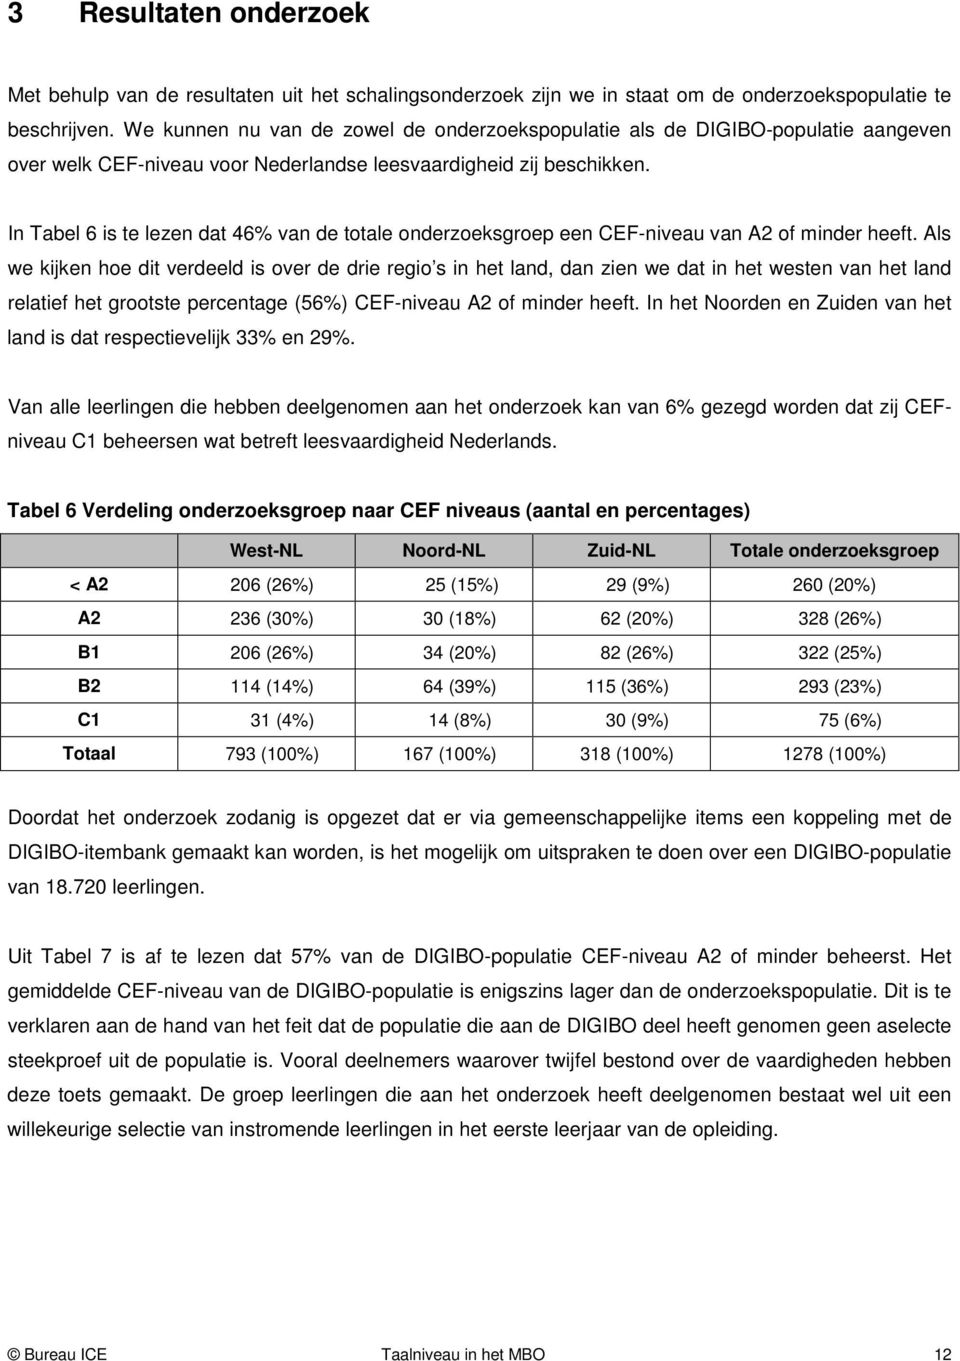 In Tabel 6 is te lezen dat 46% van de totale onderzoeksgroep een CEF-niveau van A2 of minder heeft.